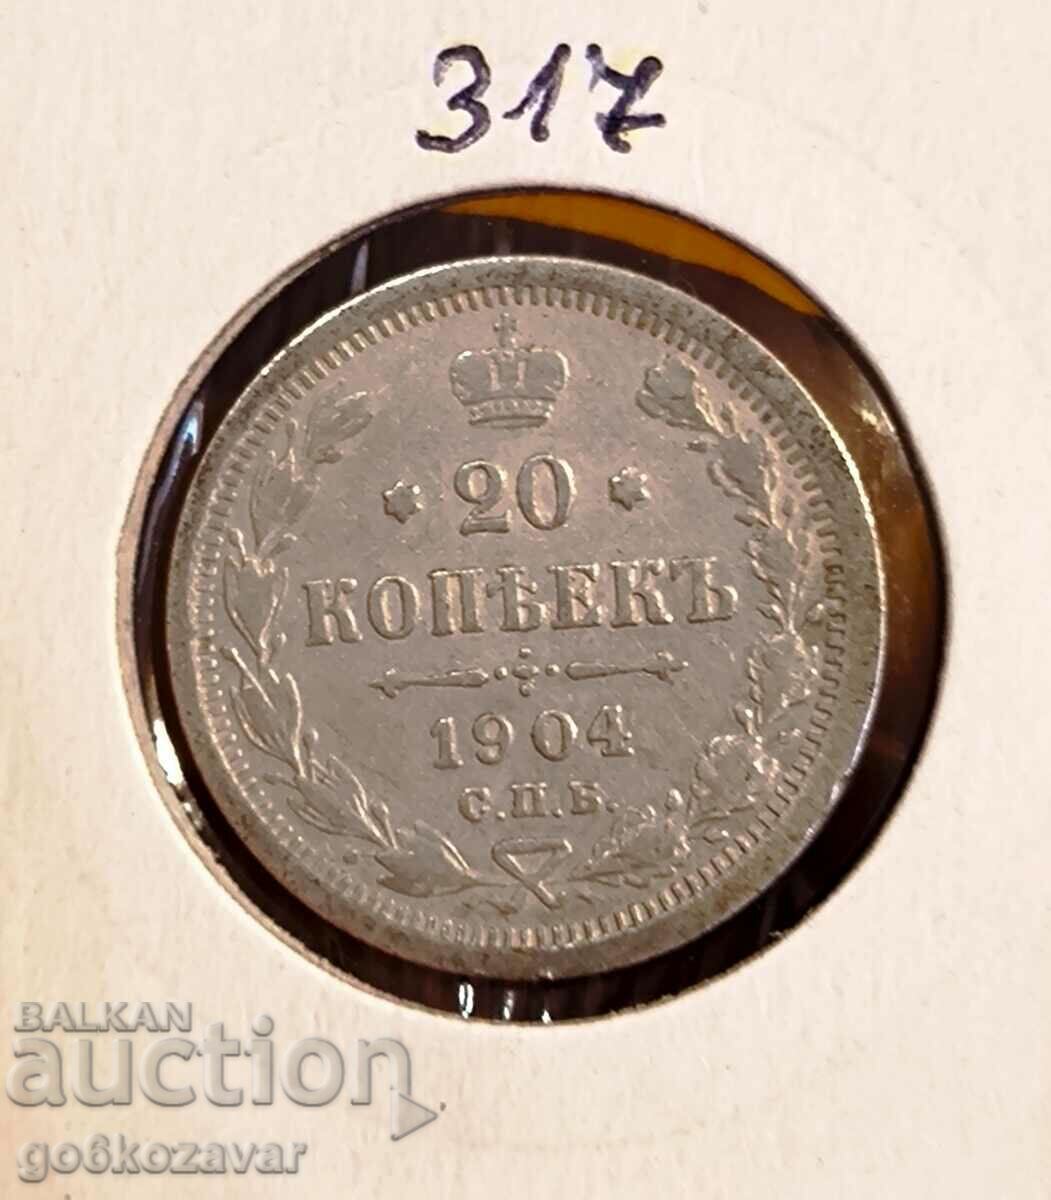 Russia 20 kopecks 1904 Silver!